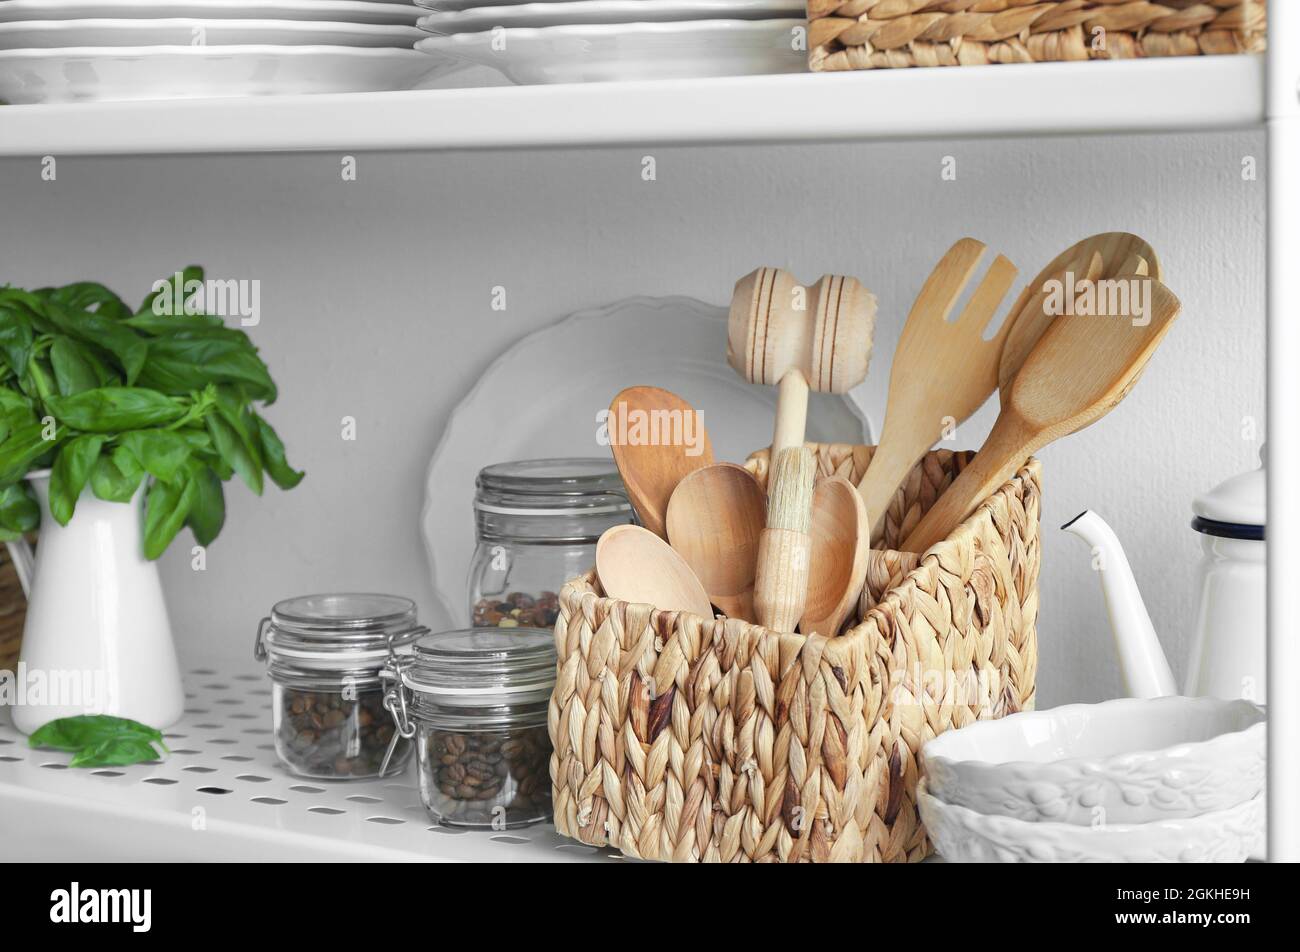 Küchengeräte im Regal des Ständers Stockfotografie - Alamy